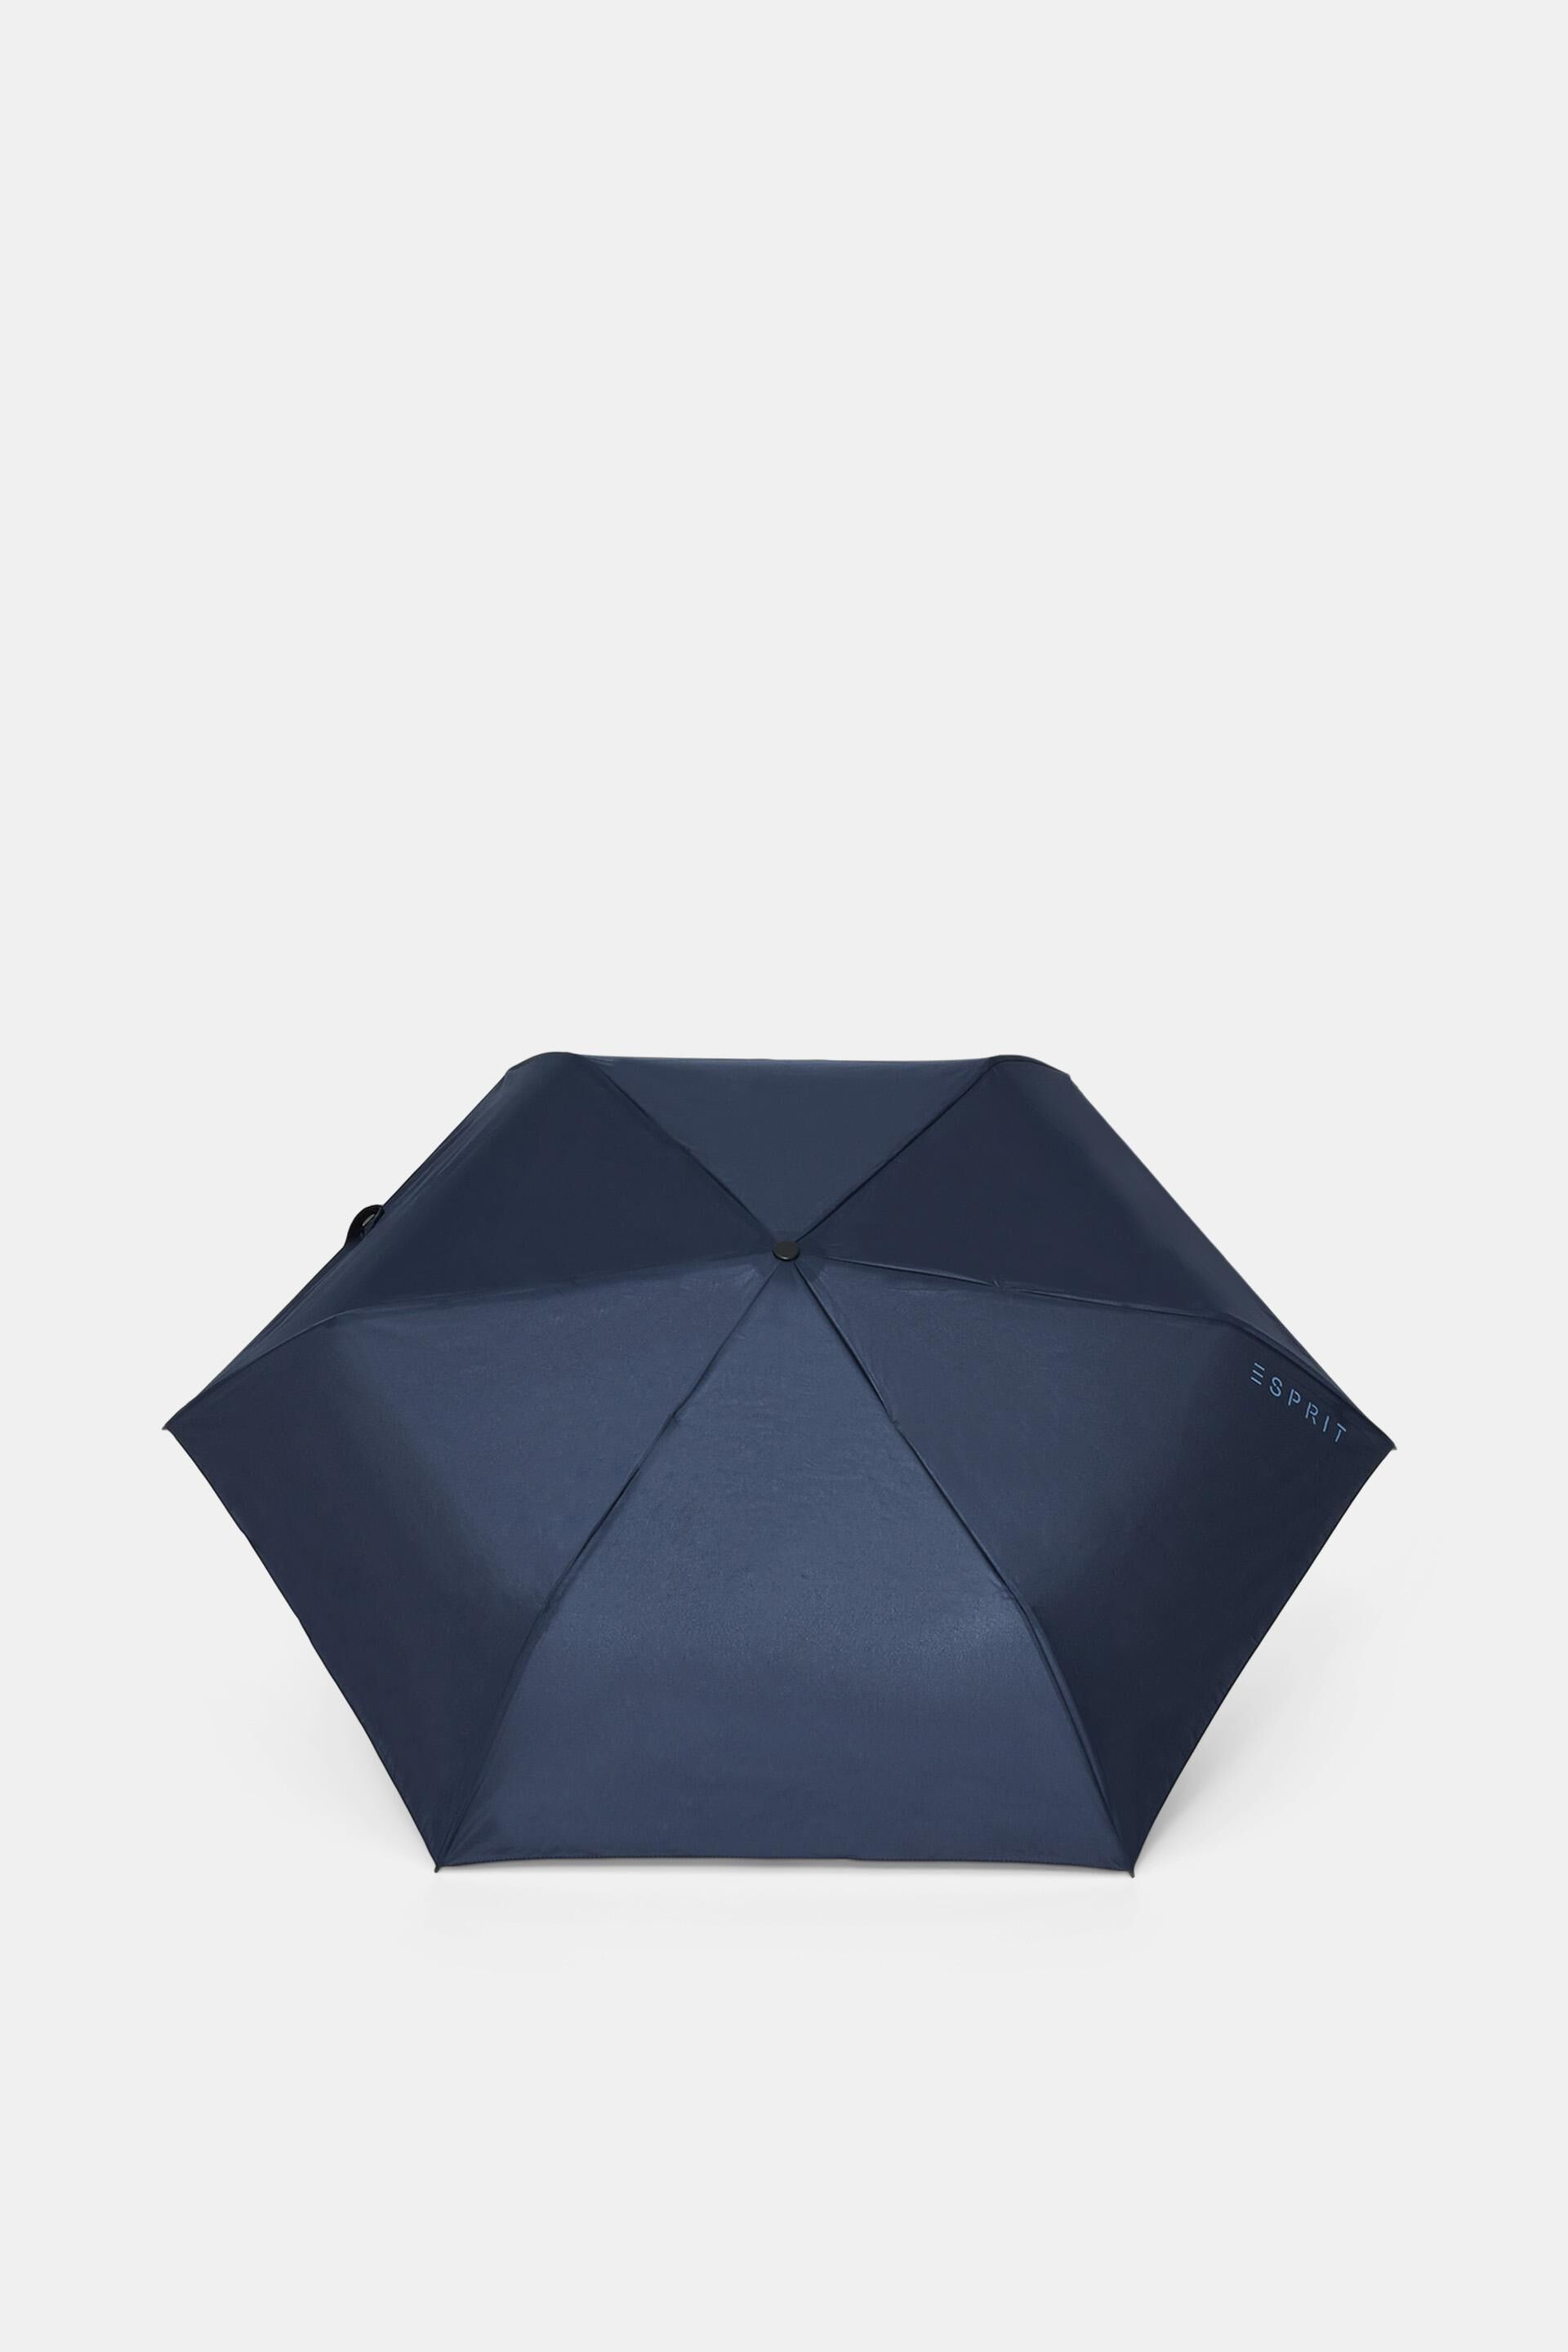 Esprit Online Store Easymatic Slimline-Taschenschirm in Blau